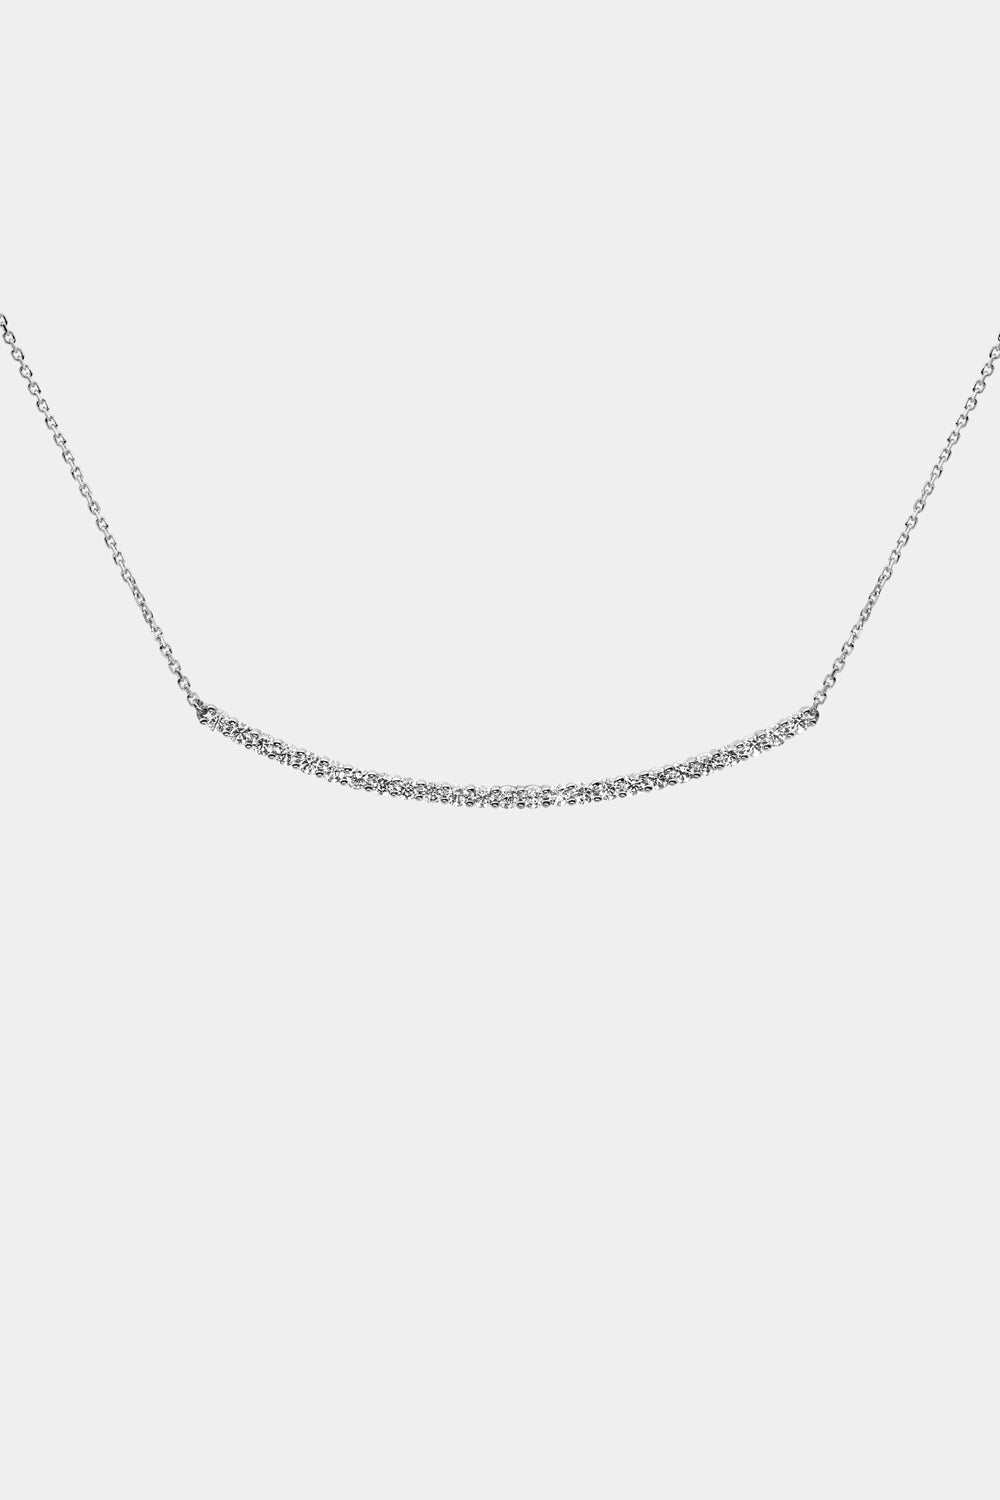 Georgia Diamond Bar Necklace | 18K White Gold